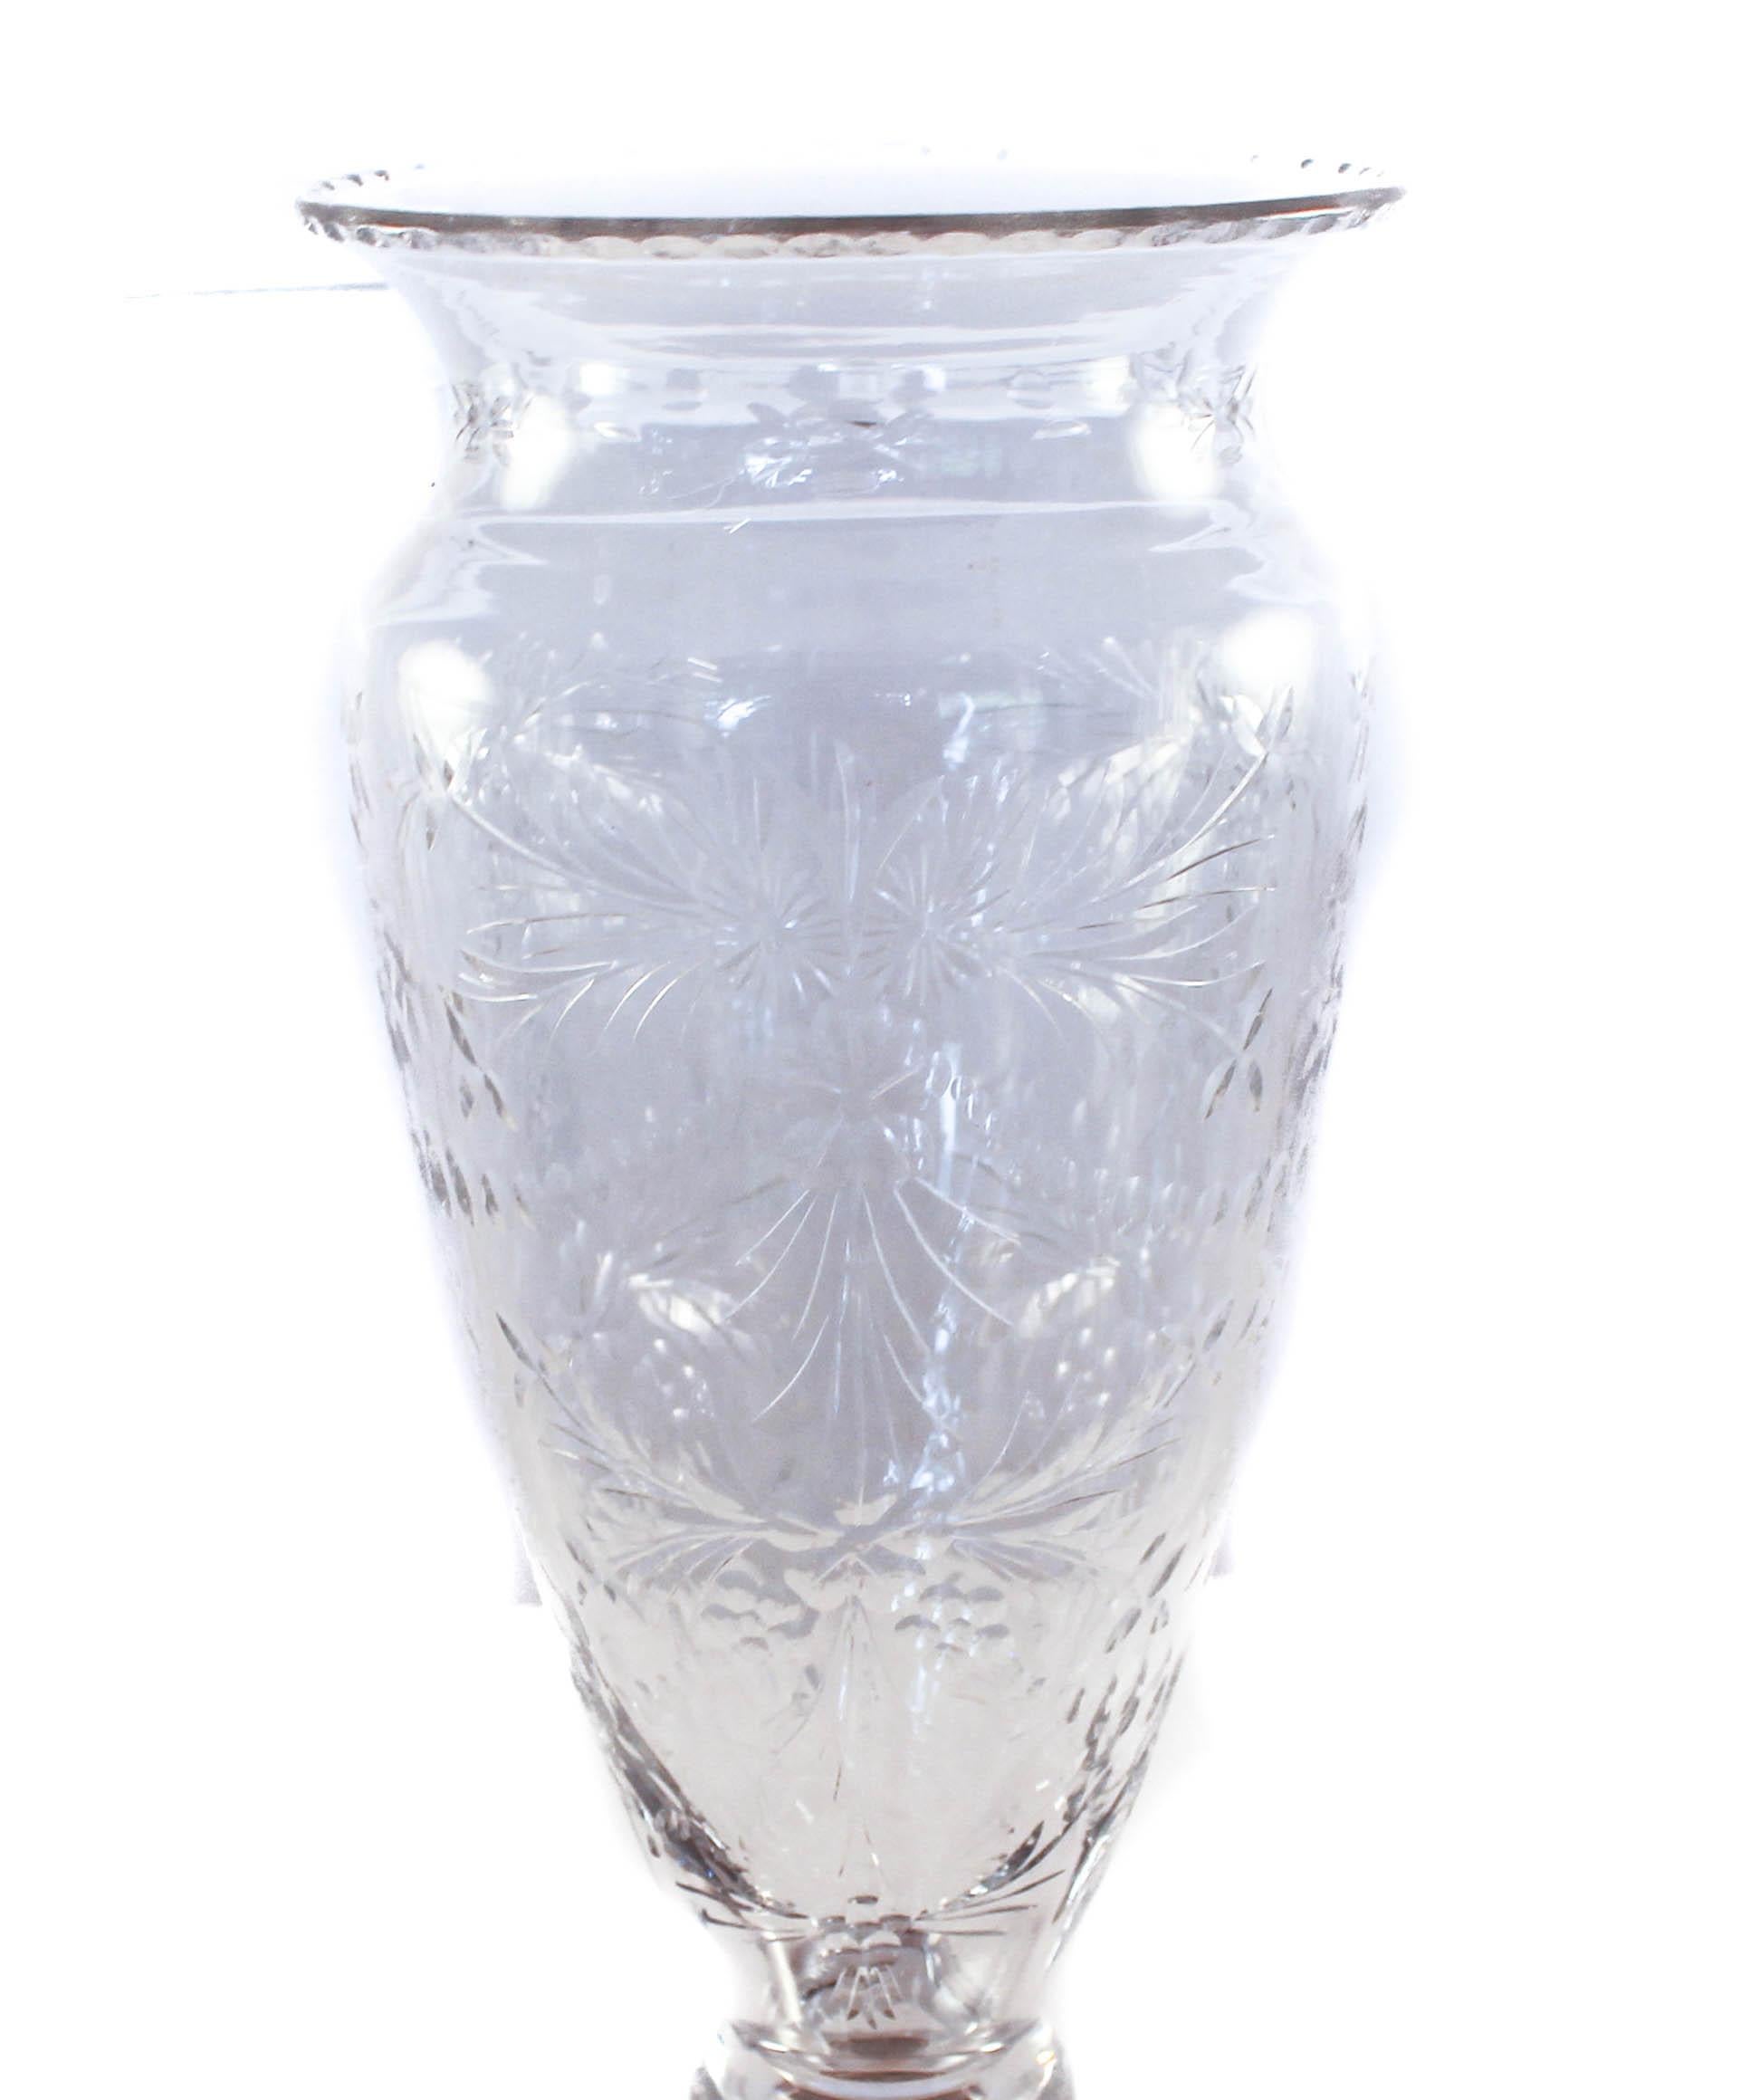 Wir sind stolz darauf, diese Vase aus Sterling und Kristall von der Hawkes Glass Company aus Corning, NY, anbieten zu können.
Das in Corning, NY, ansässige Unternehmen T.G. Hawkes & Co. (ca. 1880-1959) wurde von Thomas Gibbons Hawkes (1846-1913)